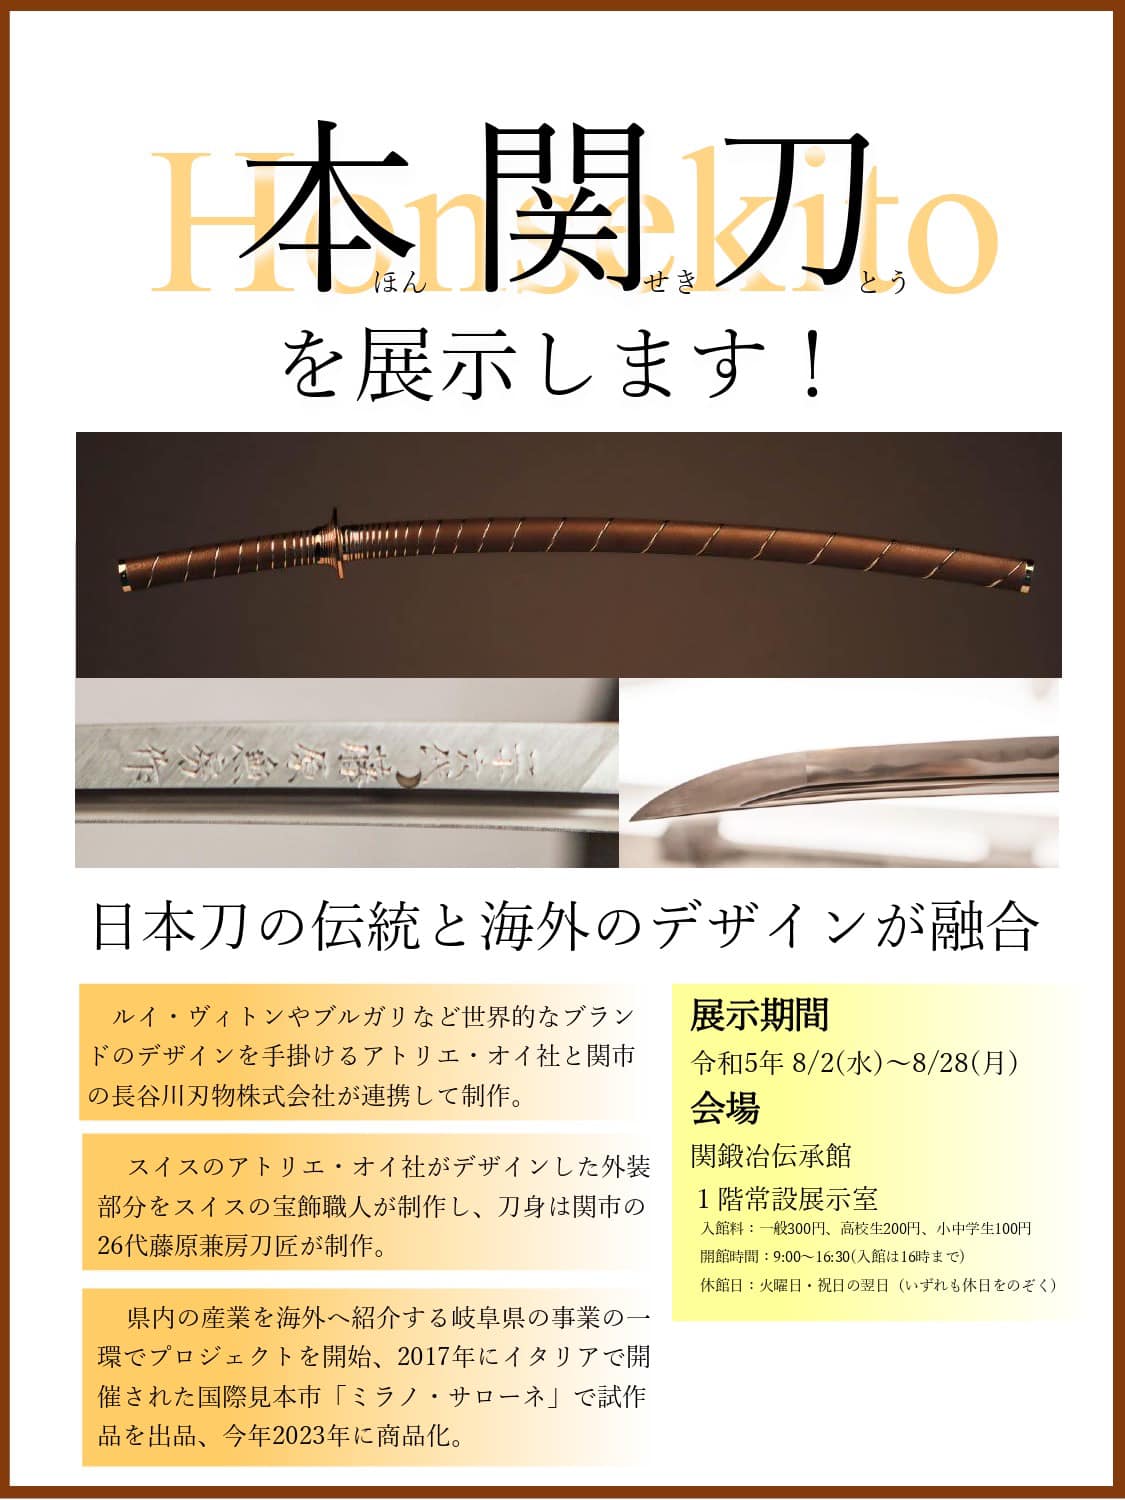 【イベント】関鍛冶伝承館に本関刀が展示されます